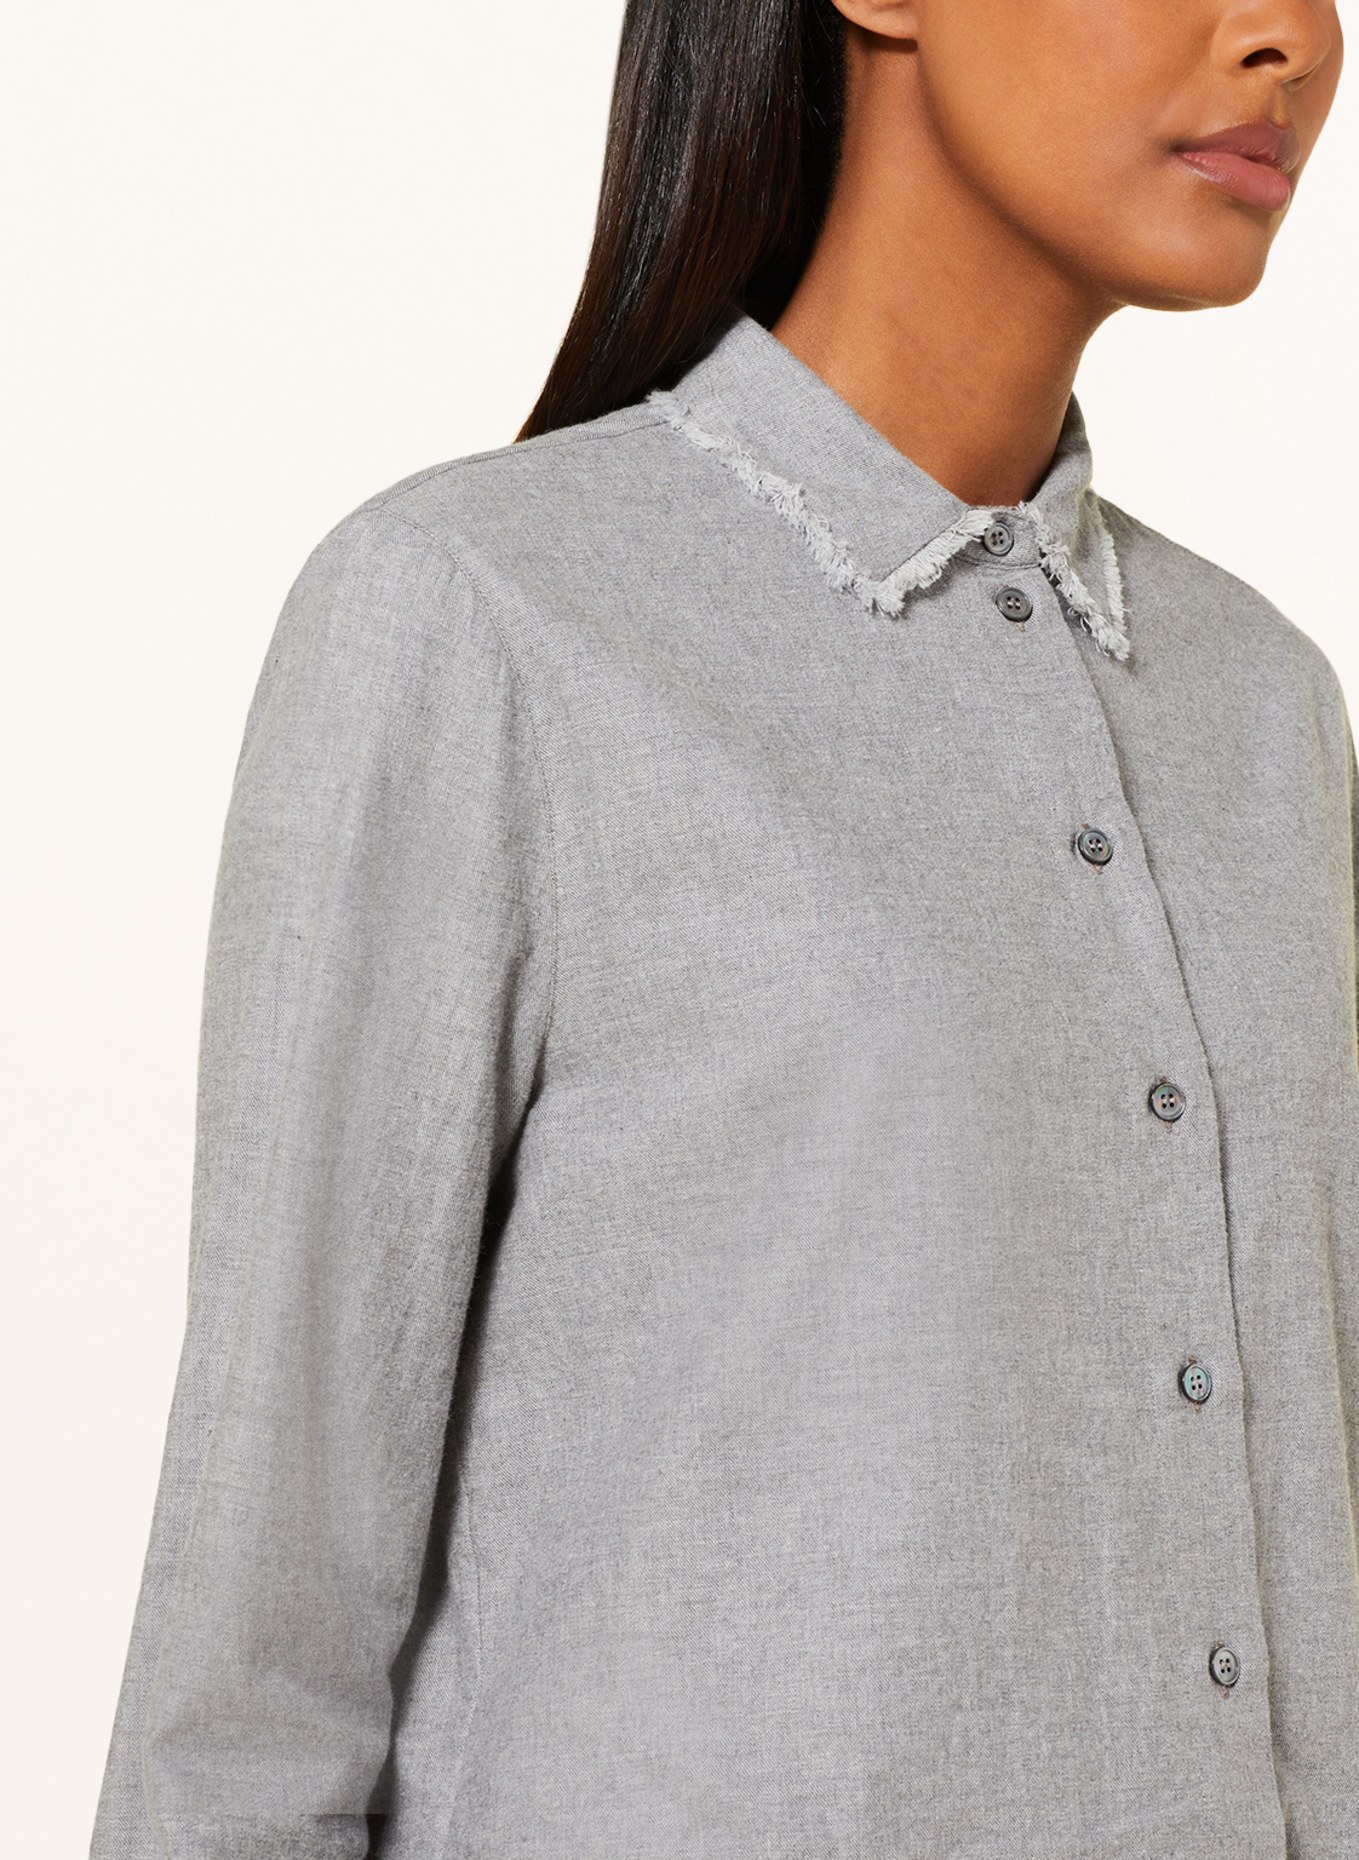 ROBERT FRIEDMAN Shirt blouse NICOL, Color: GRAY (Image 4)